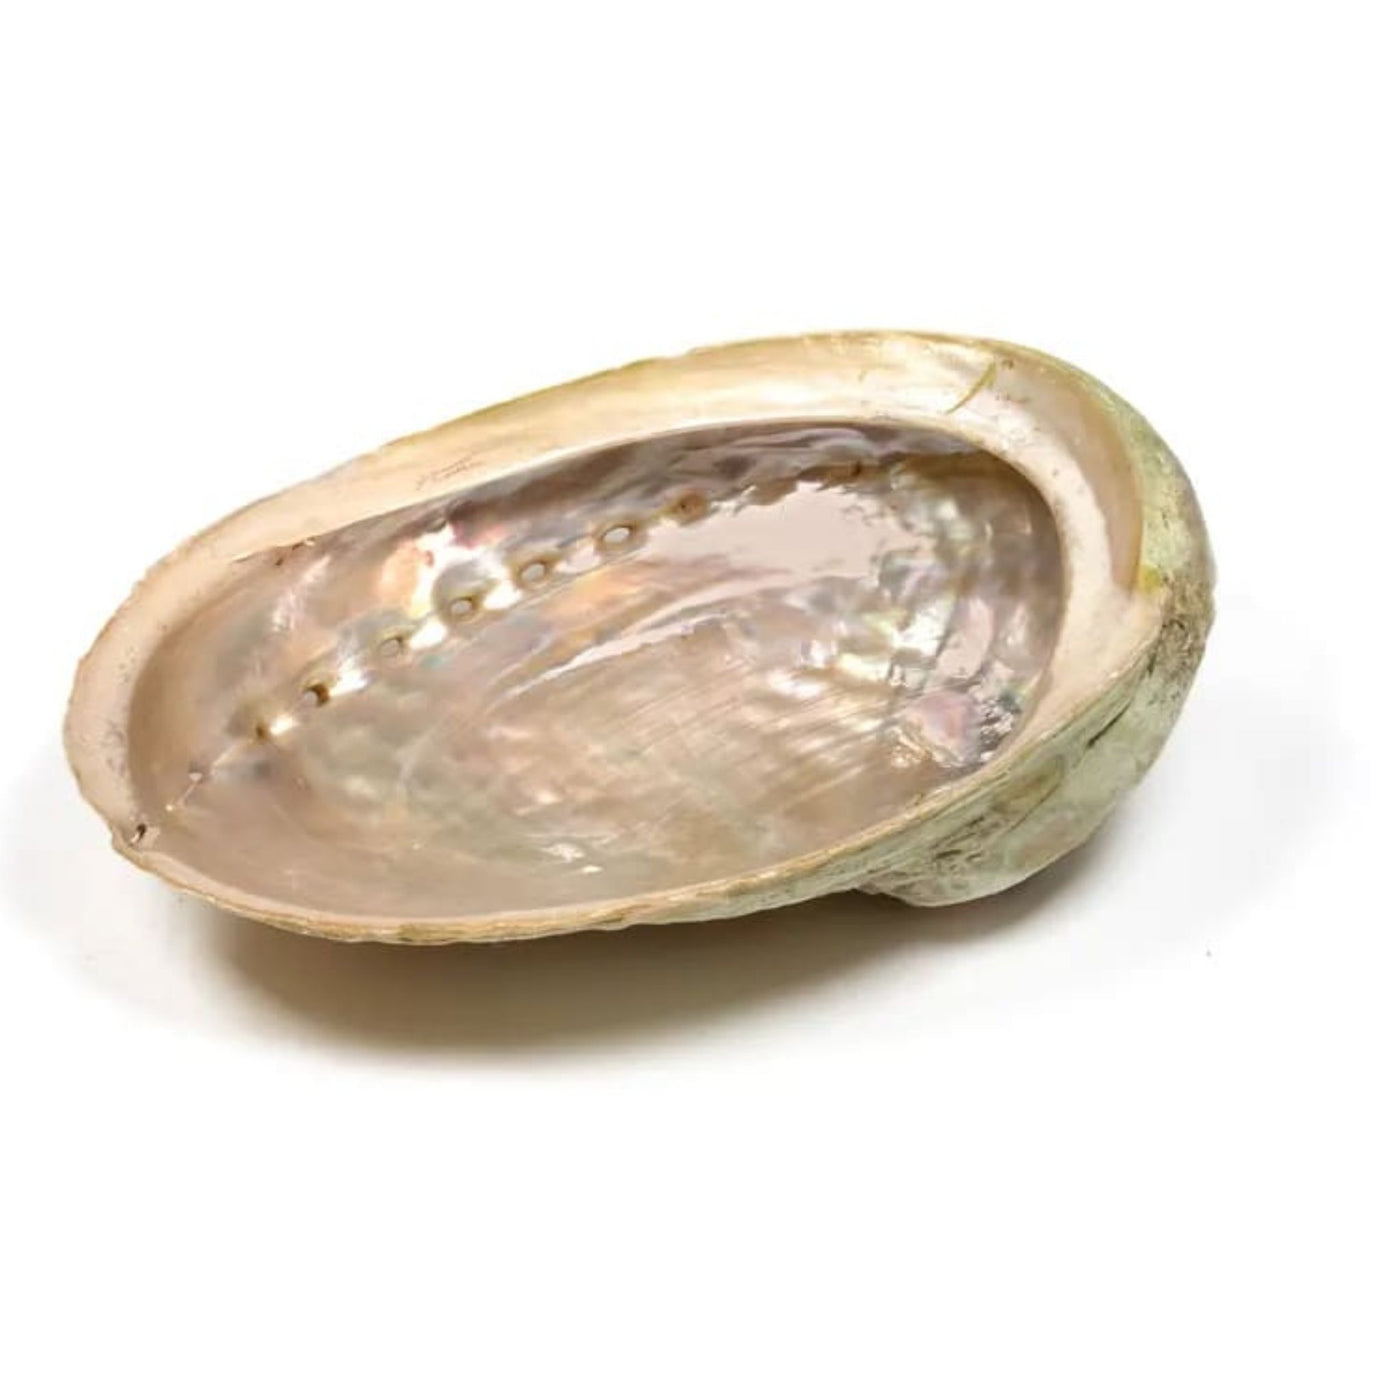 Abalone-snäcka för smudging etc (abalone skal)